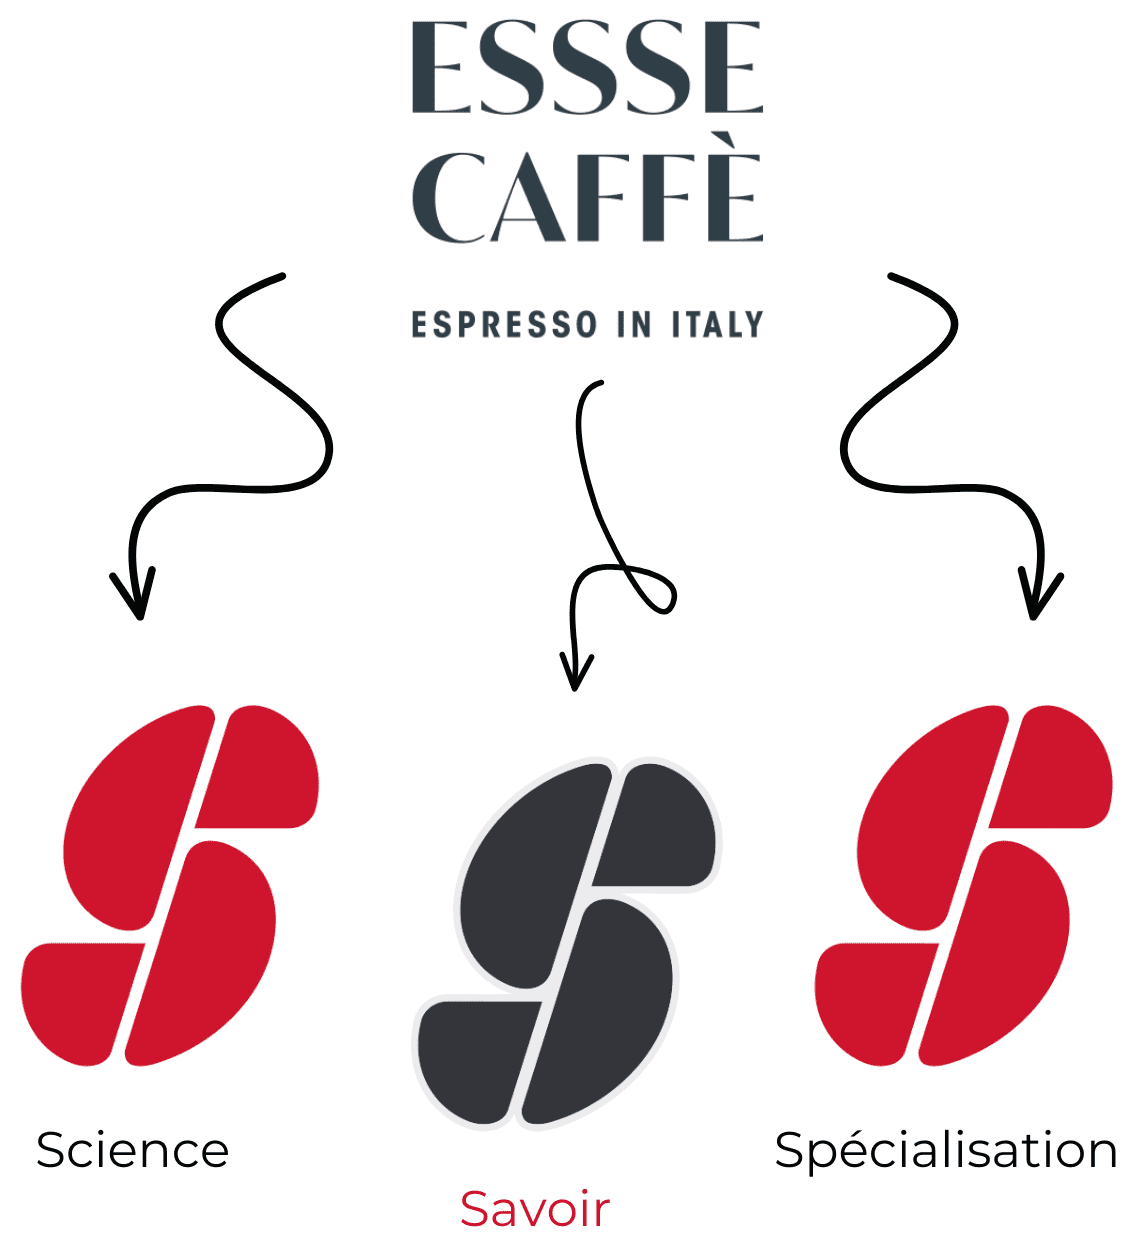 3S espresso sistema Espresso - café - ESSSE CAFFÉ MAROC